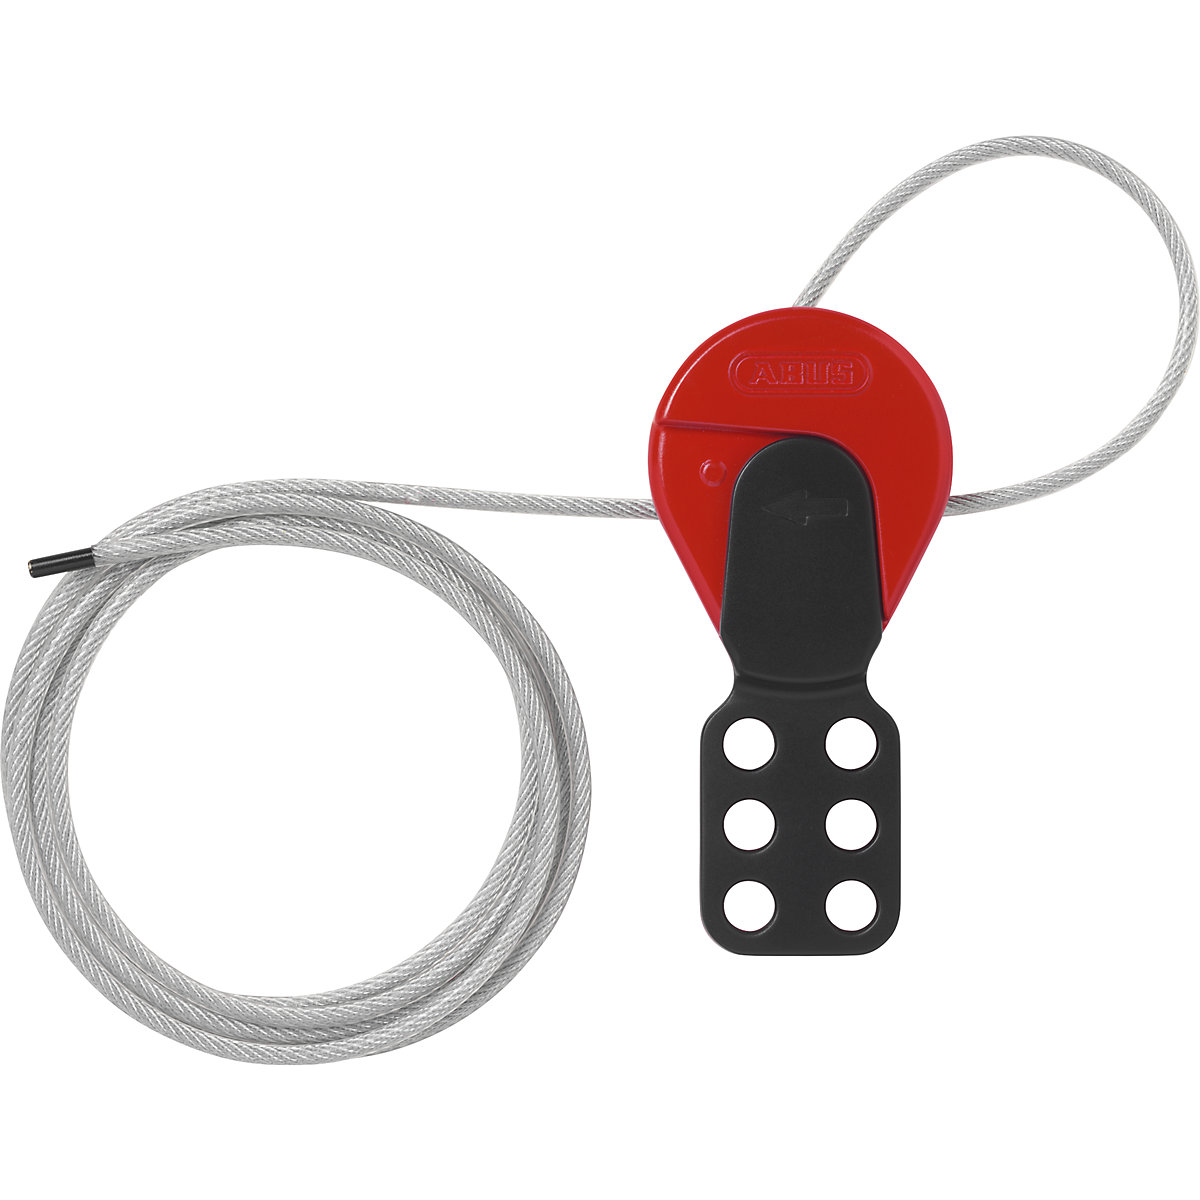 Safelex cable lock - ABUS